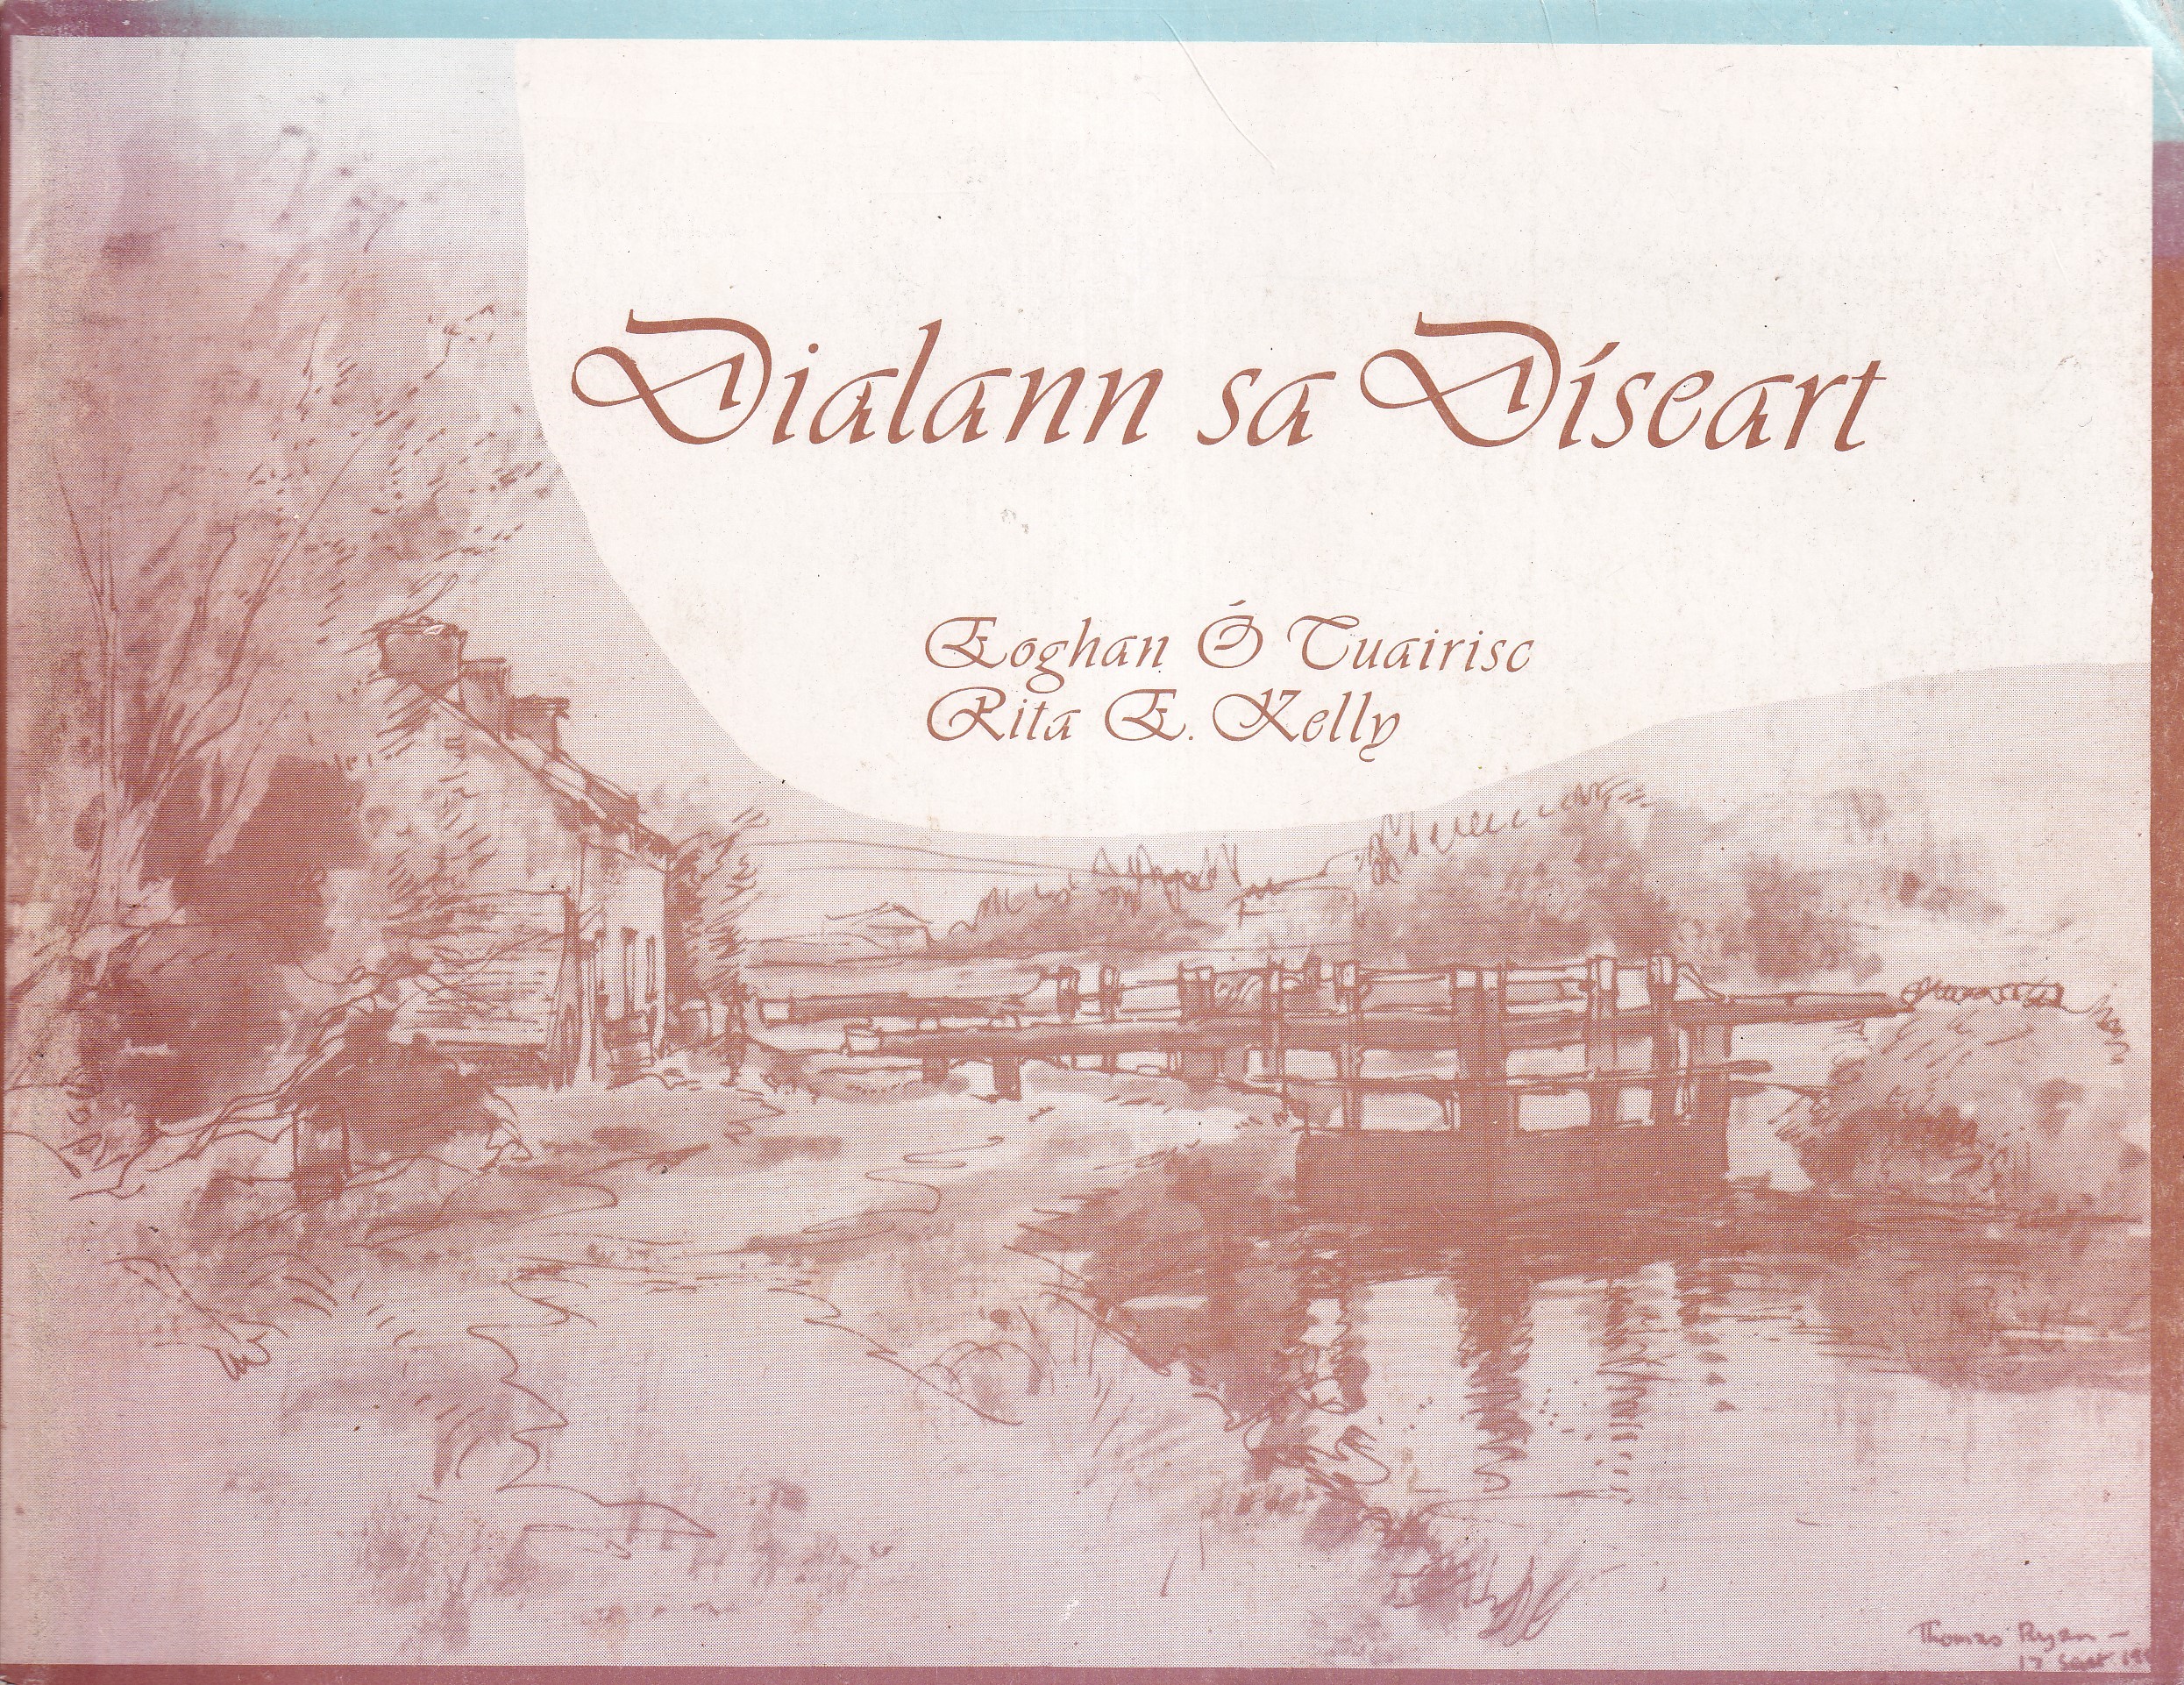 Dialann sa Díseart by Eoghan Ó Tuairisc and Rita E. Kelly.